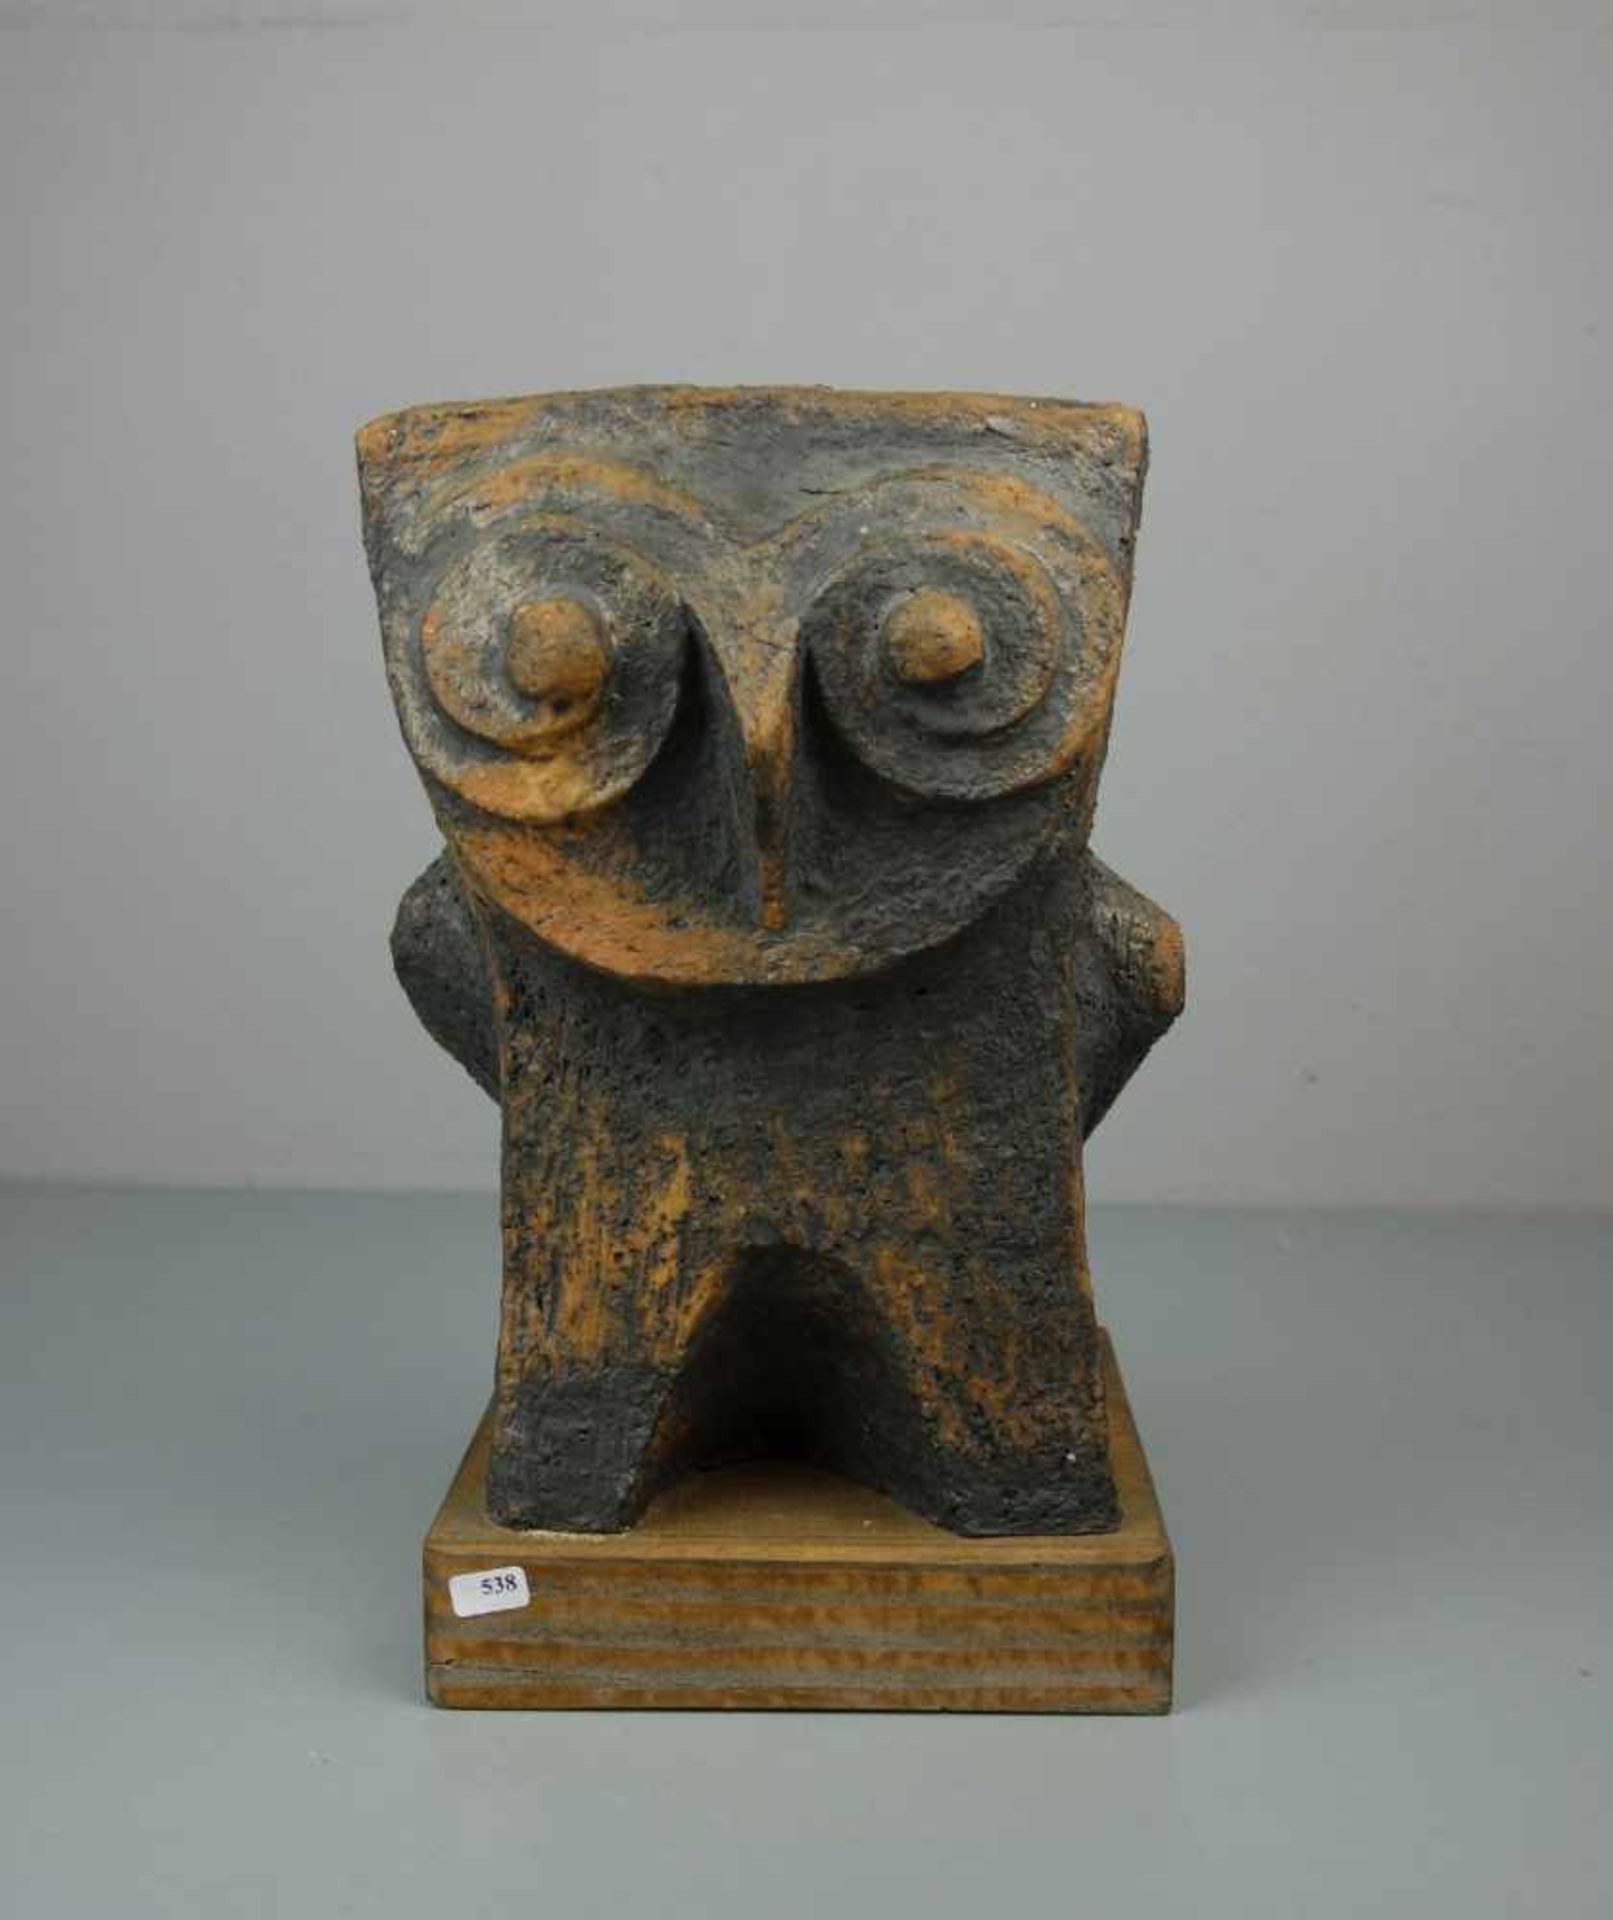 HOFFMANN, HERMANN (geb. 1922), Skulptur / owl sculpture: "Eule", Westerwälder Ton / Westerwälder